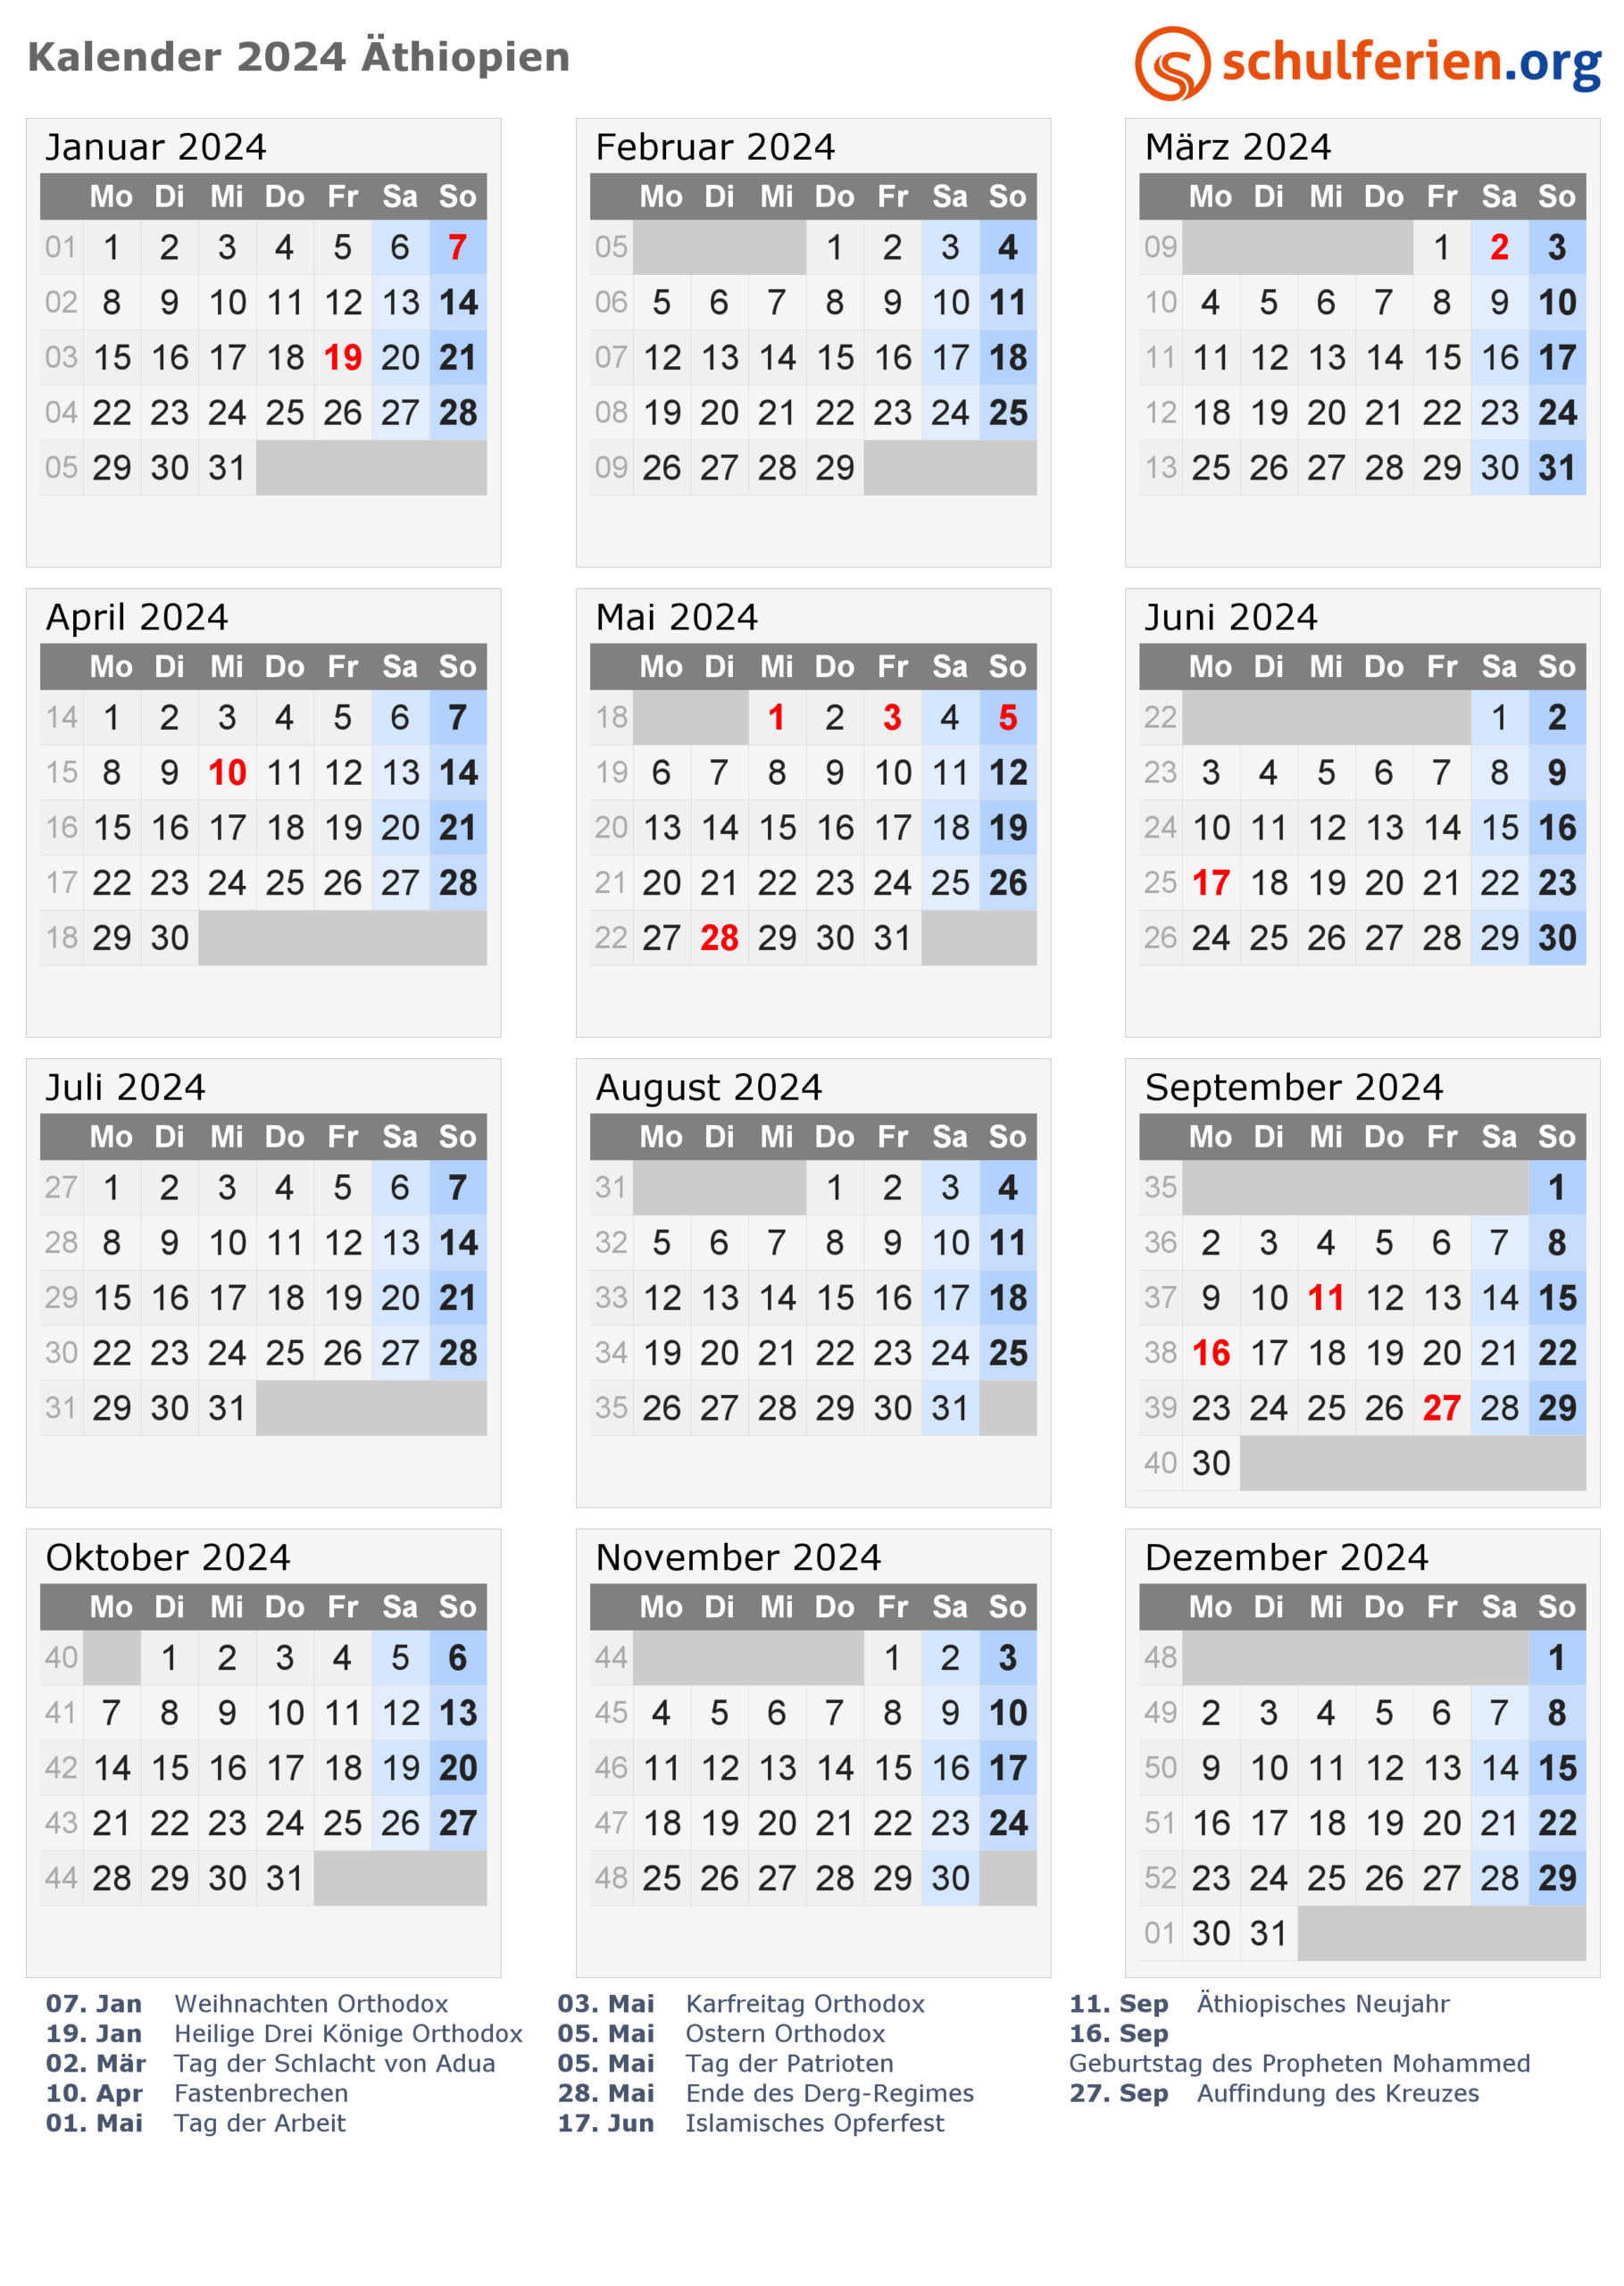 Kalender 2024/2025 Äthiopien, Feiertage with July 21 2024 in Ethiopian Calendar